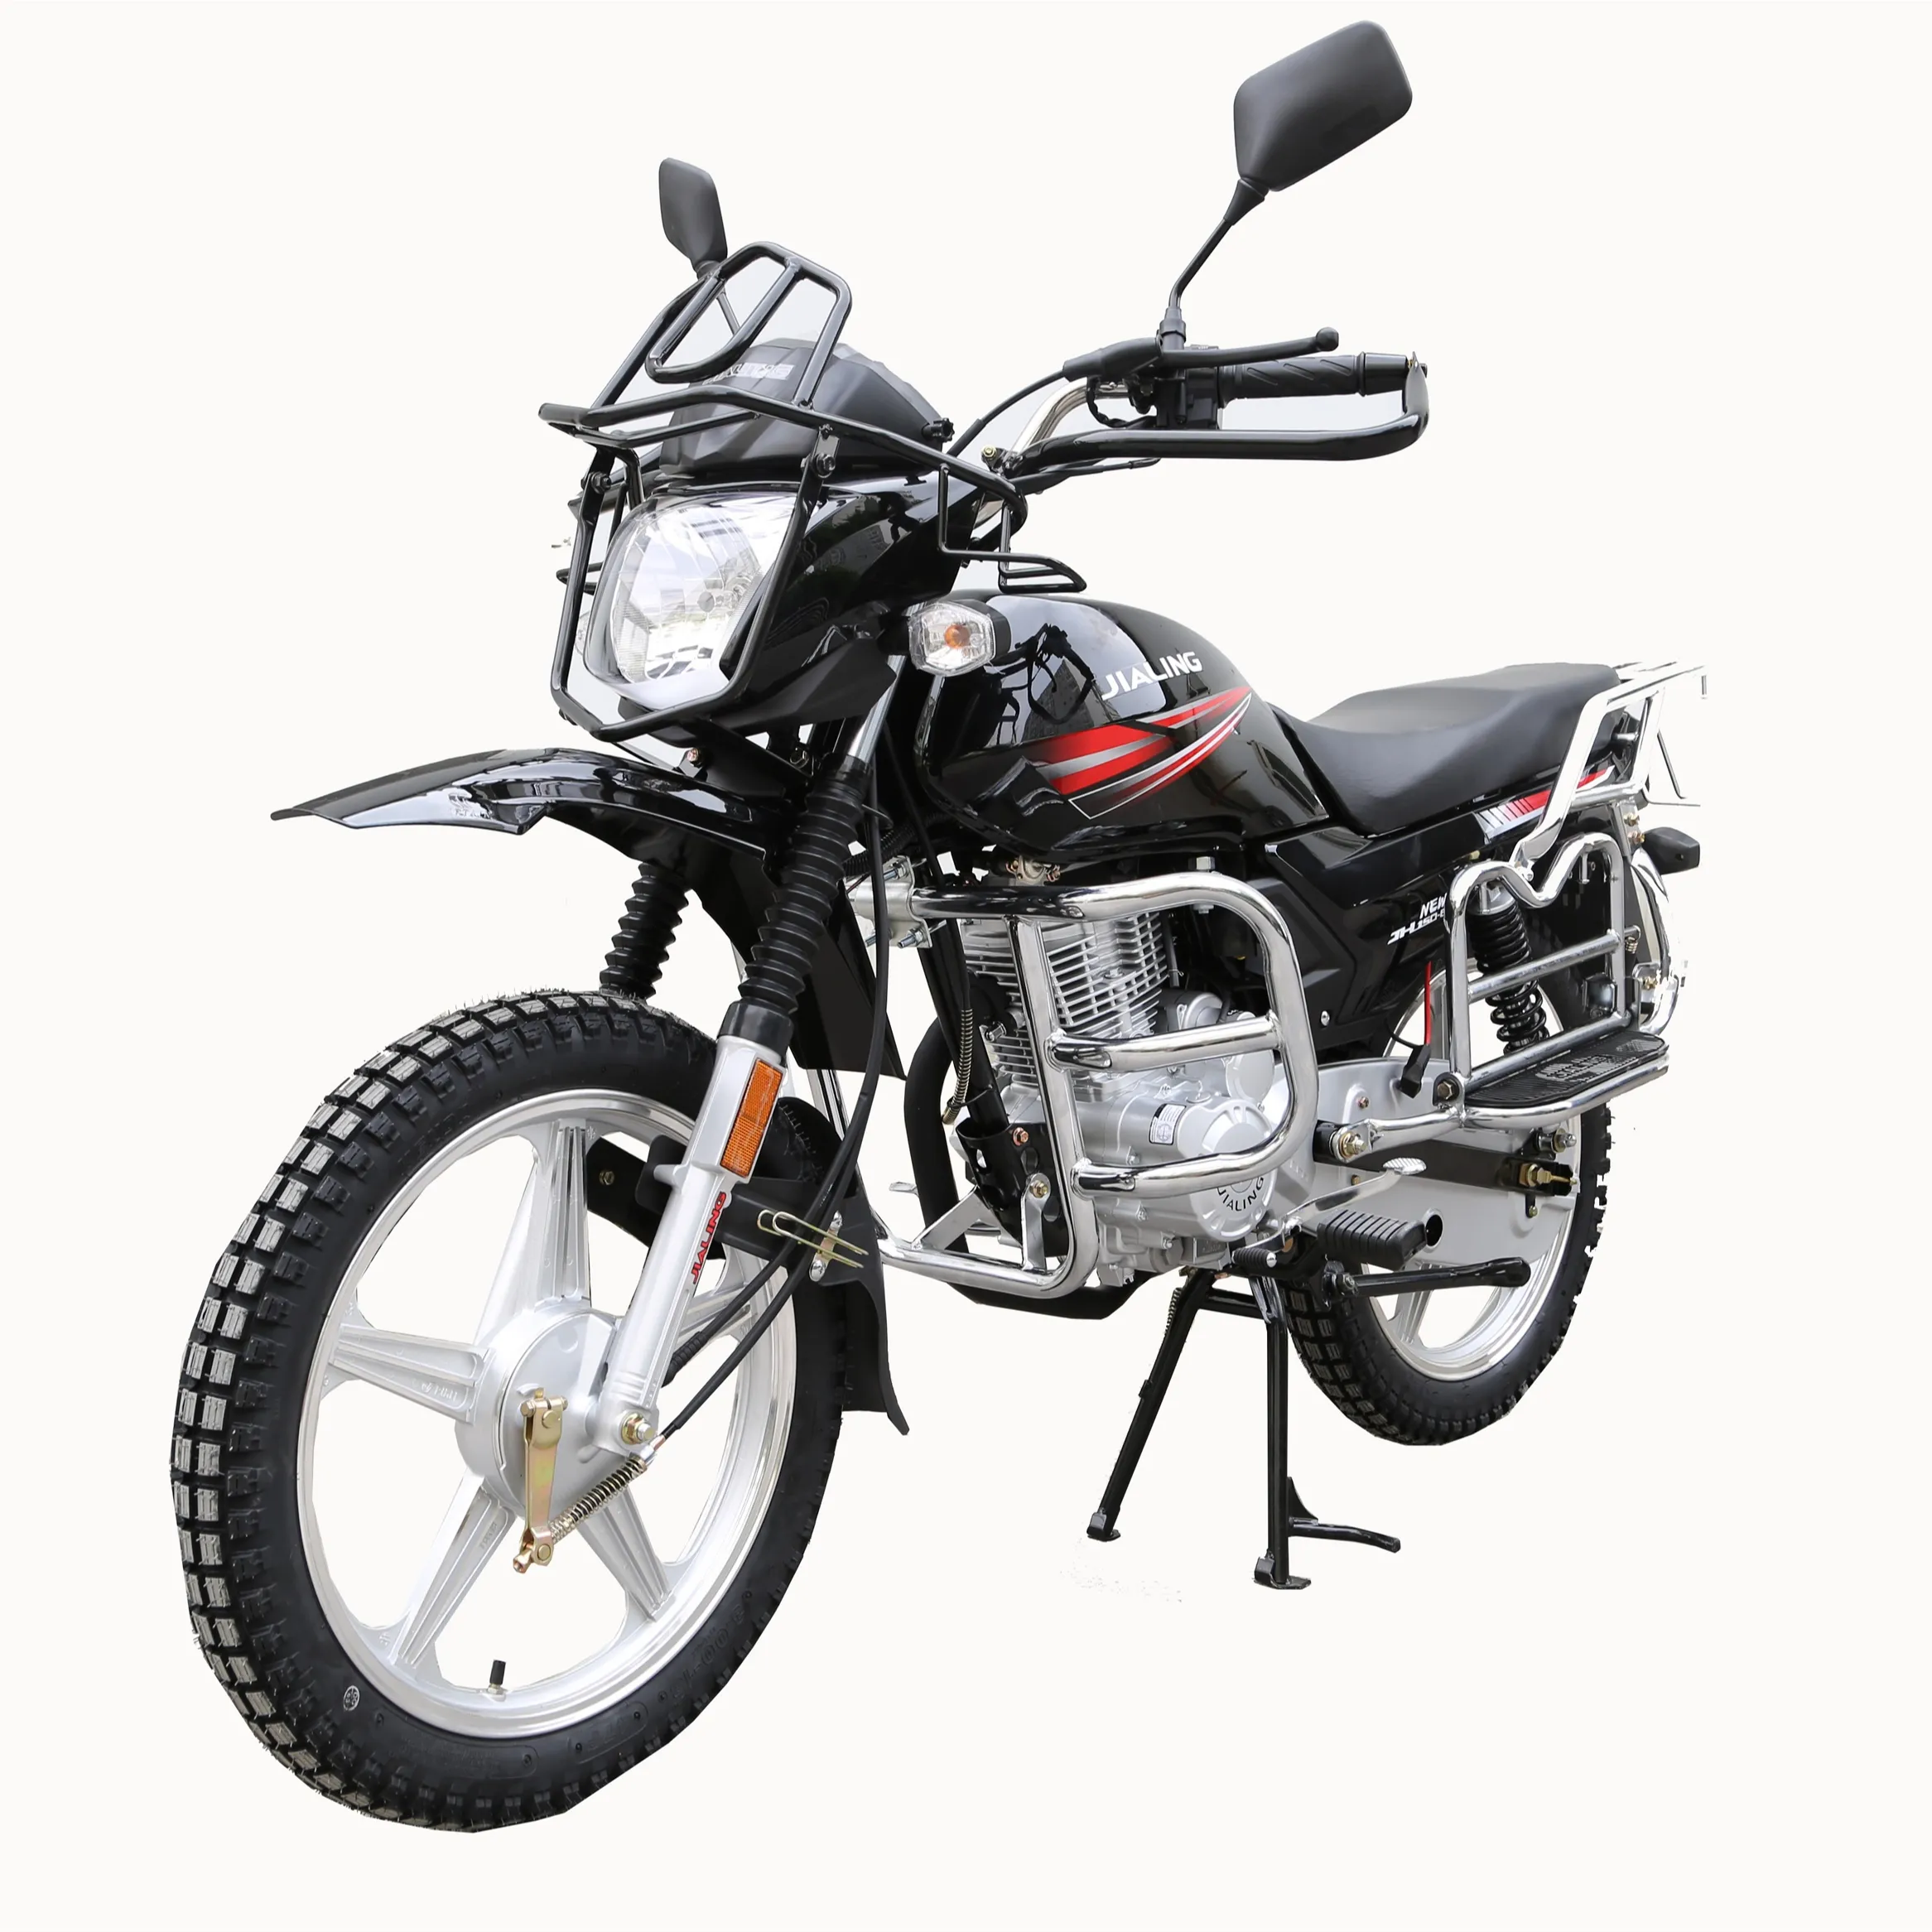 Jialing sepeda motor Trail 125 cc, sepeda motor olahraga off-road tahan lama